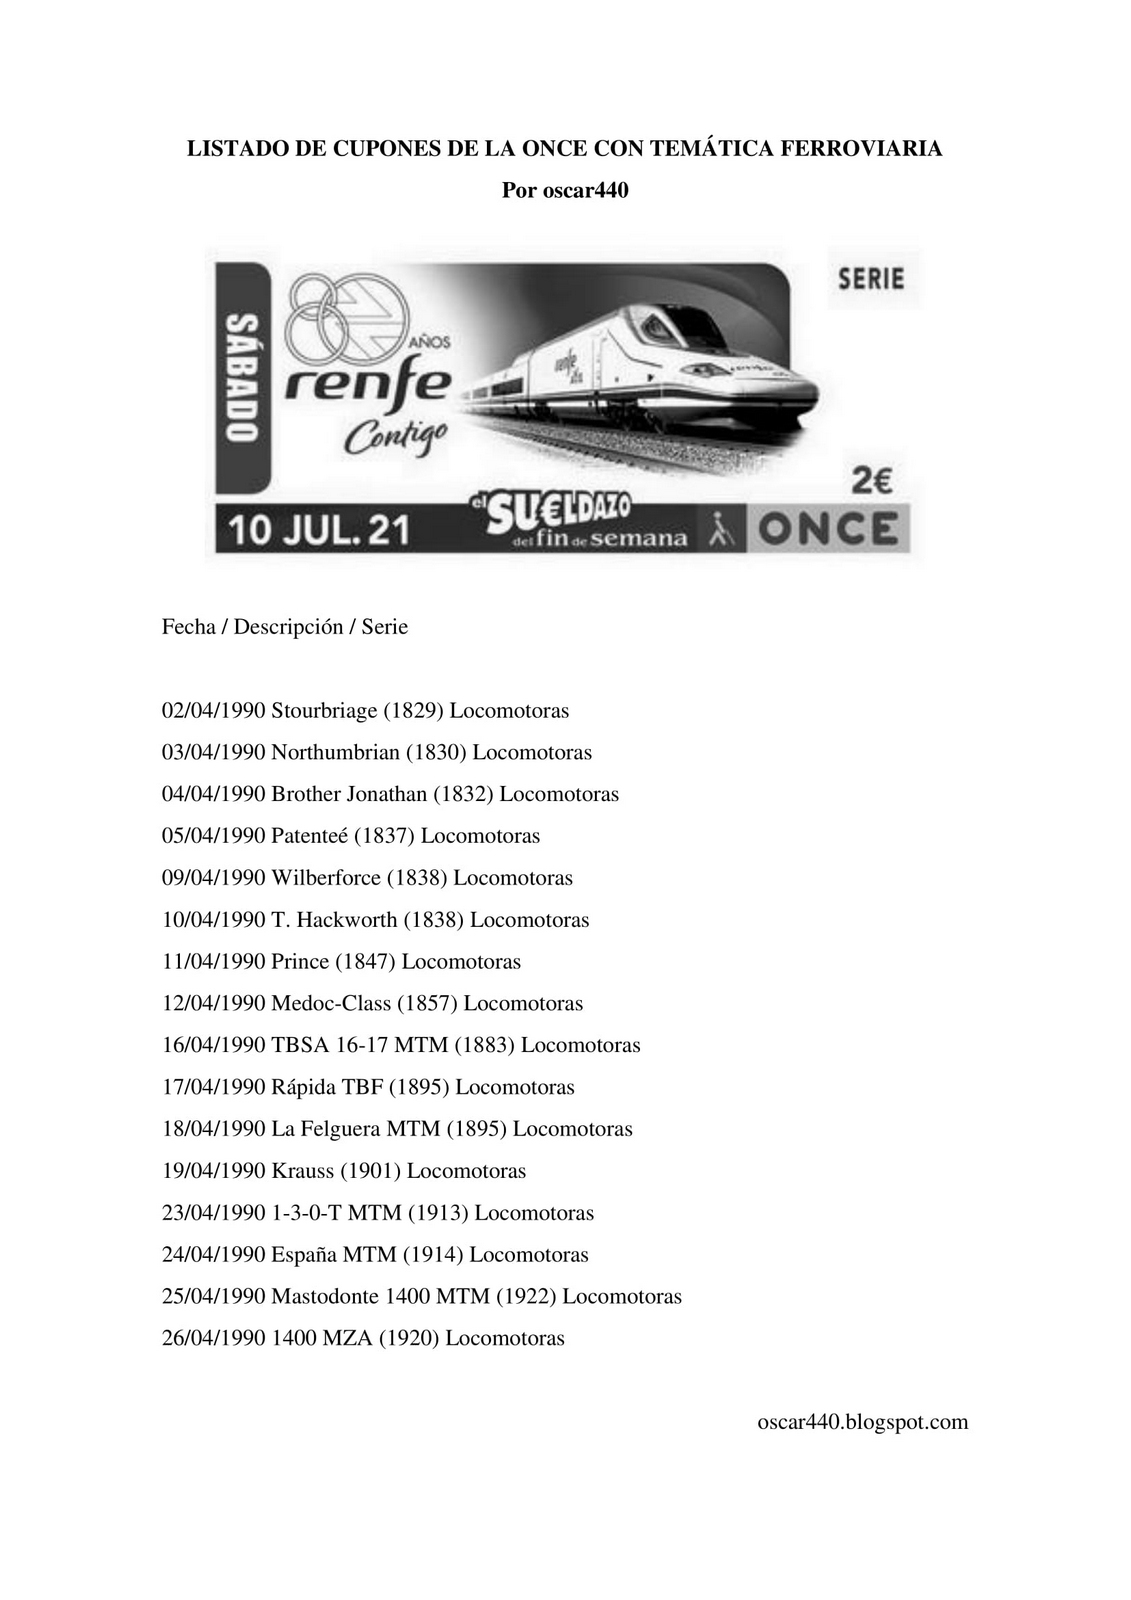 Listado de cupones ONCE con tema ferroviario_1.jpg